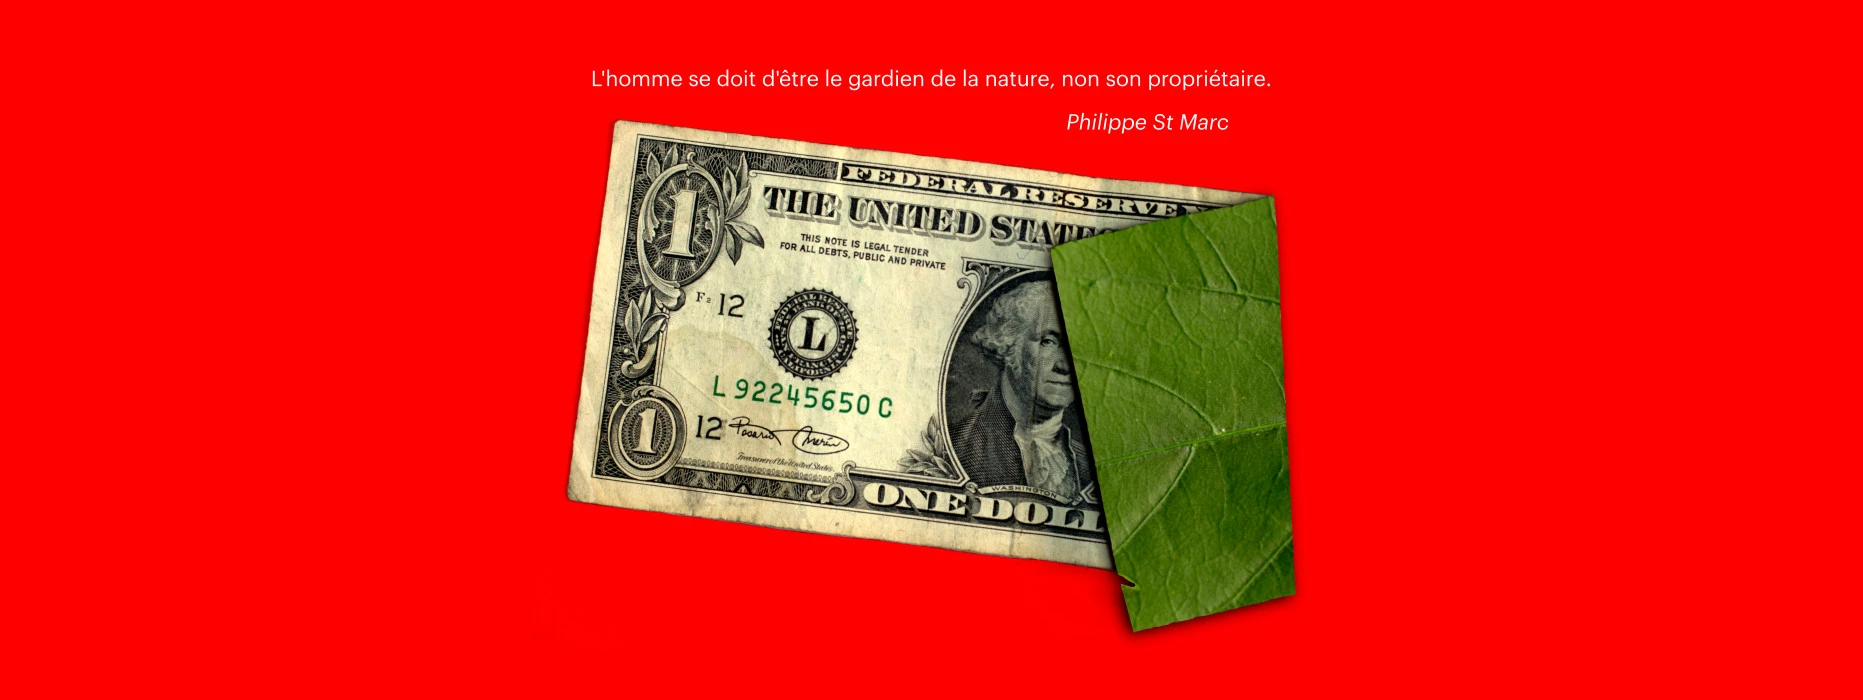 Un fond rouge avec un billet de 1 dollar au milieu. Sa partie droite
	    est repliée vers nous de manière à présenter le verso du billet dont la texture 
            est celle d'une feuille d'arbre rainurée.